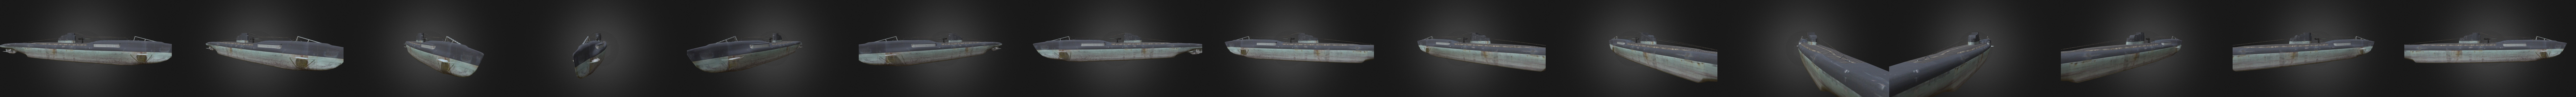 Uc 65 German U Boat Wwi 3d Model By Realsim Ltd Realsim 1f